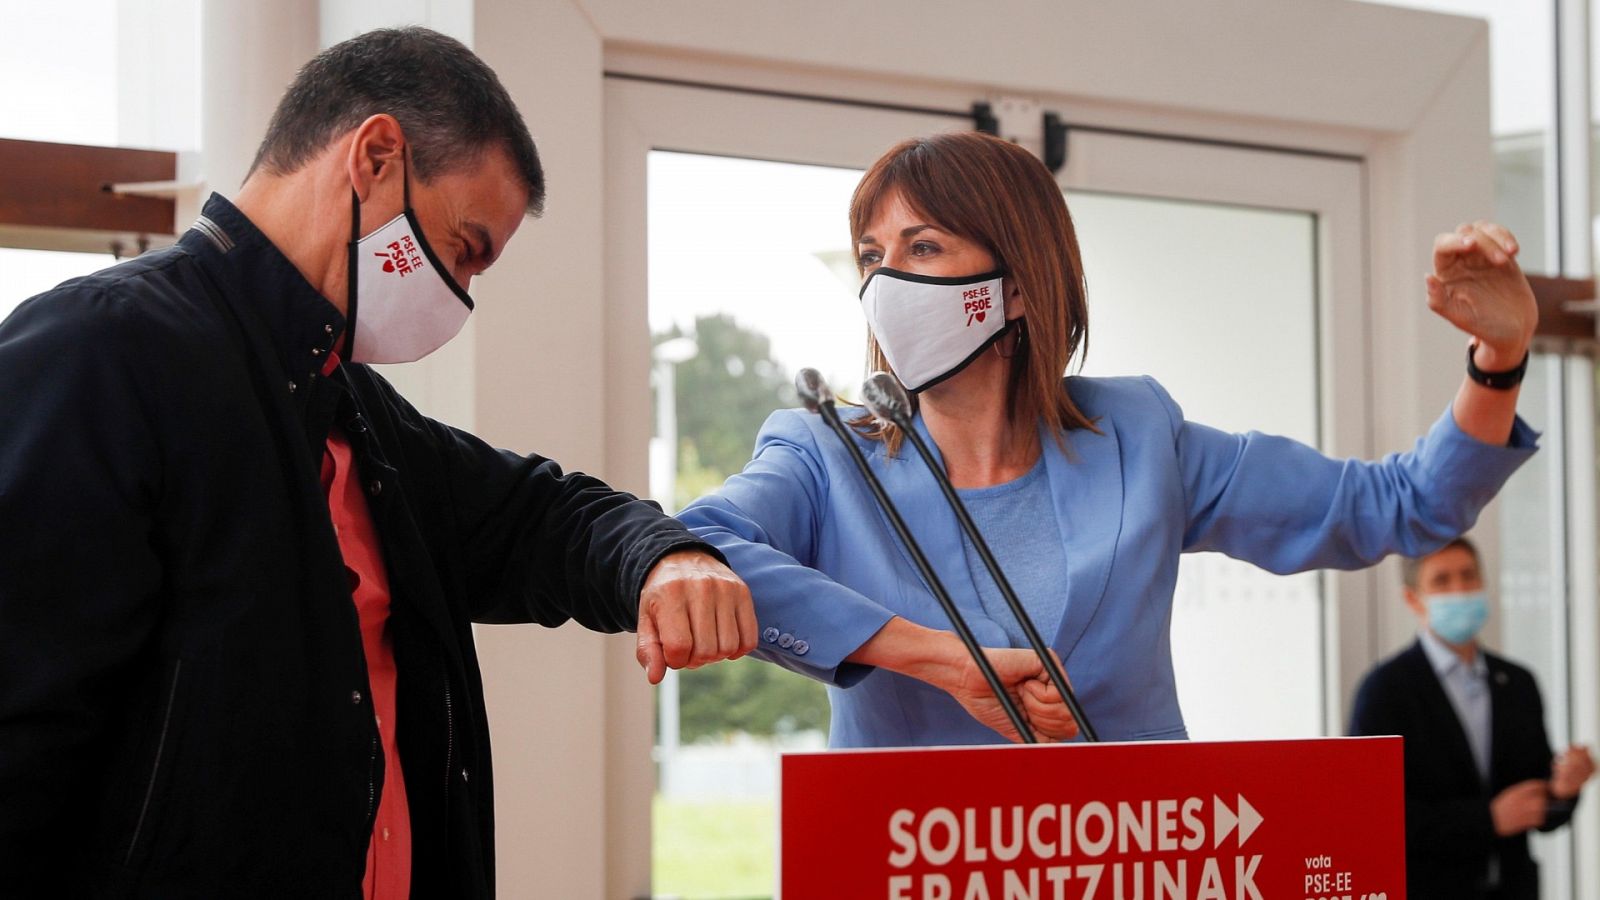 Elecciones vascas | Sánchez pide unidad para afrontar la reconstrucción y revindica la "cogobernanza" - RTVE.es